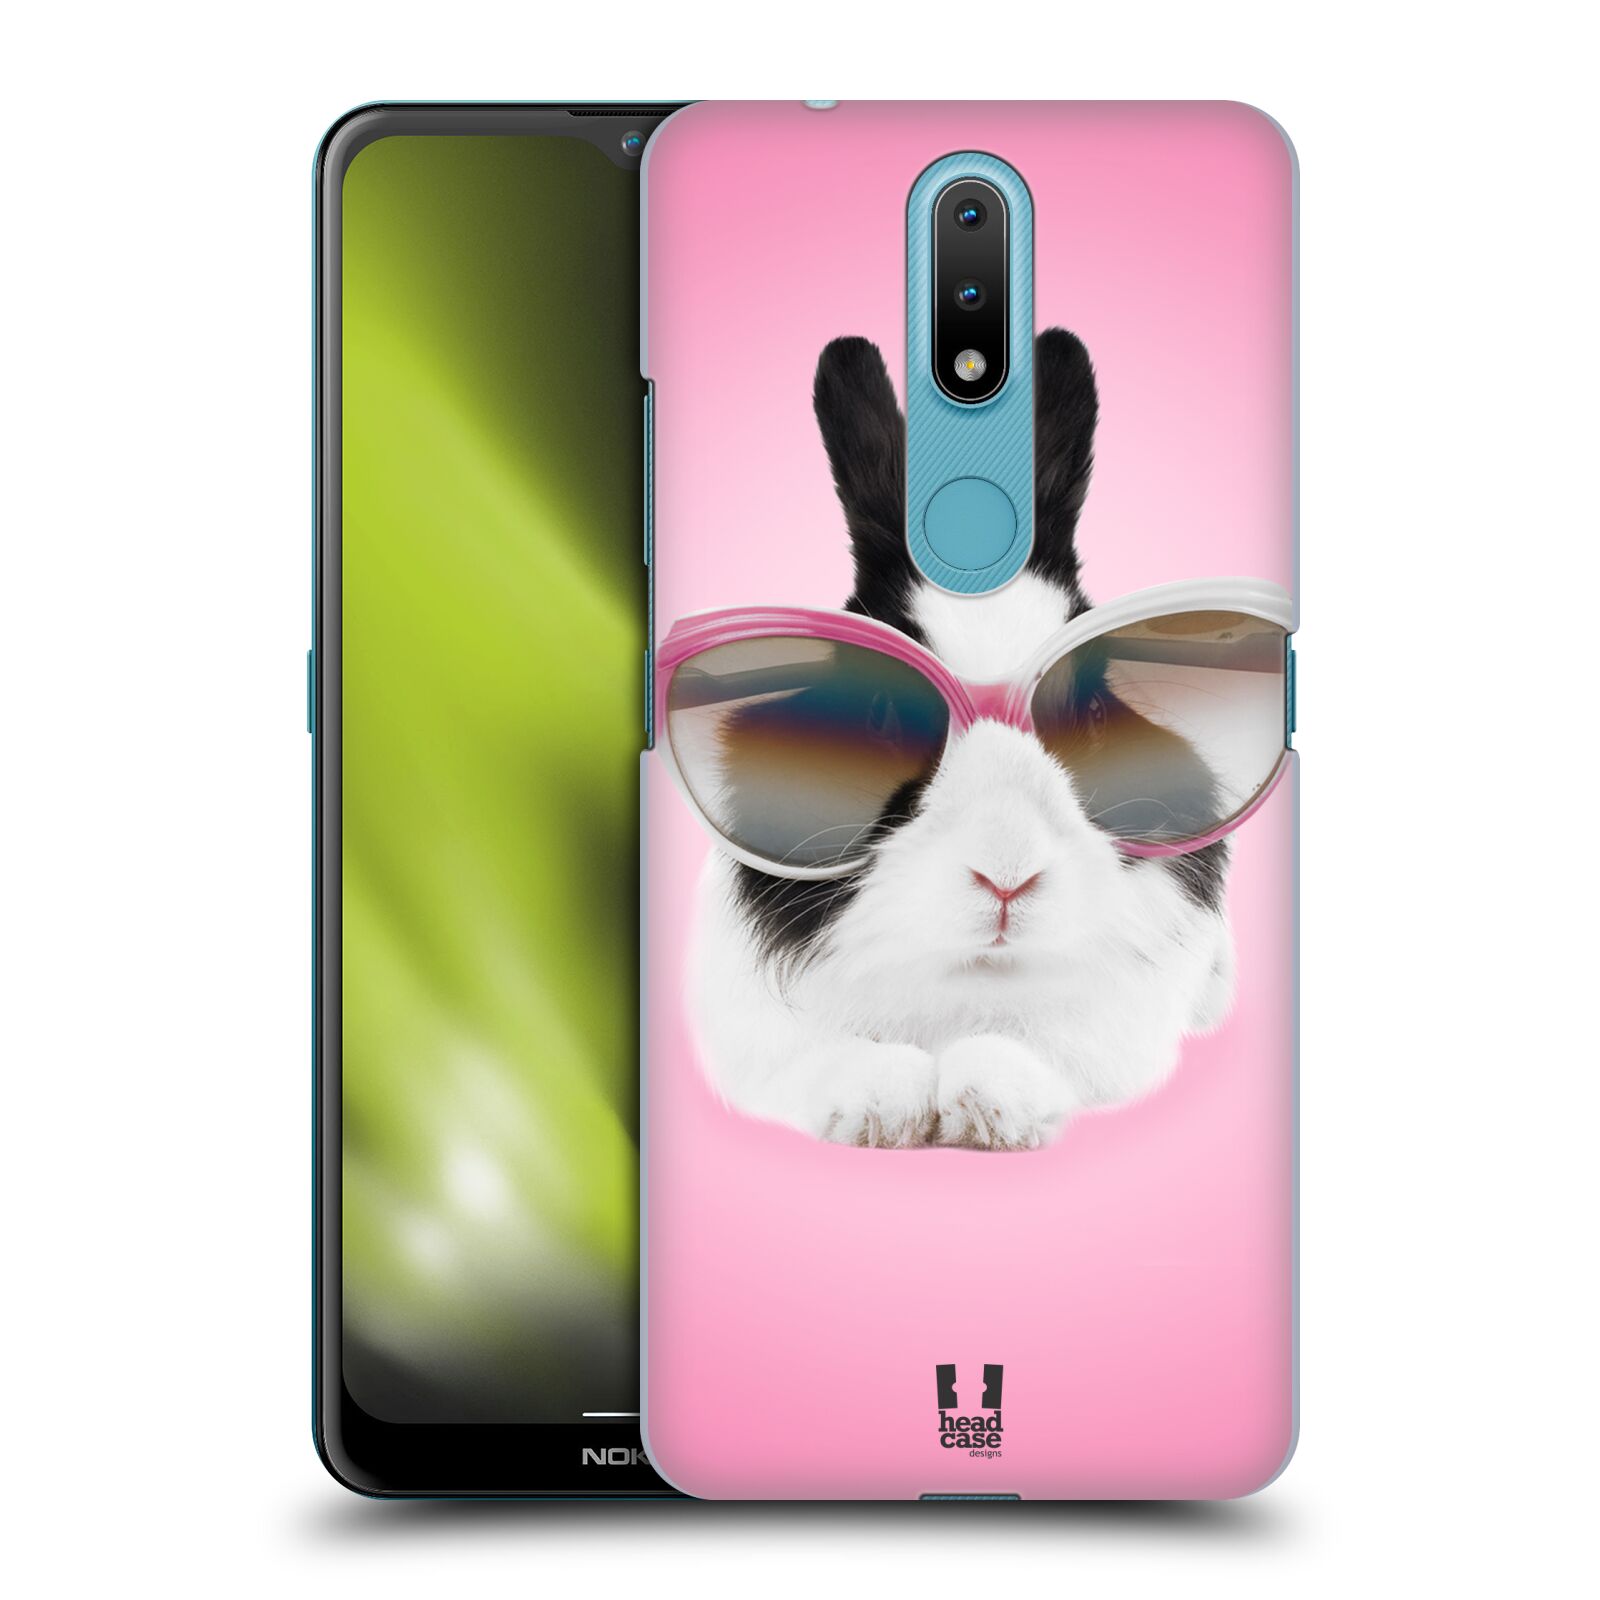 Plastový obal HEAD CASE na mobil Nokia 2.4 vzor Legrační zvířátka roztomilý králíček s brýlemi růžová